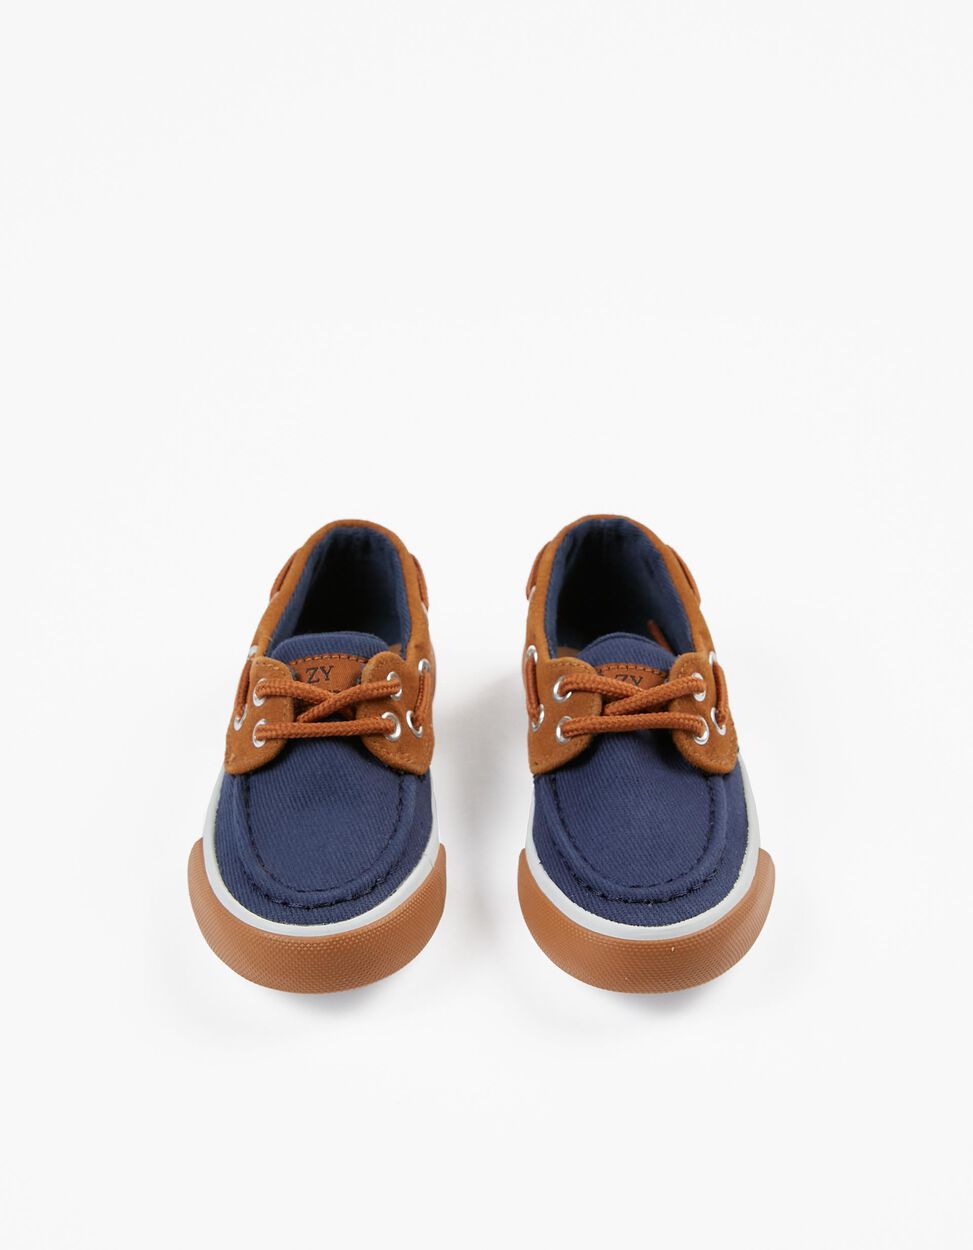 Zapatos Náuticos para Bebé Azul Oscuro/Marrón | Zippy Online España